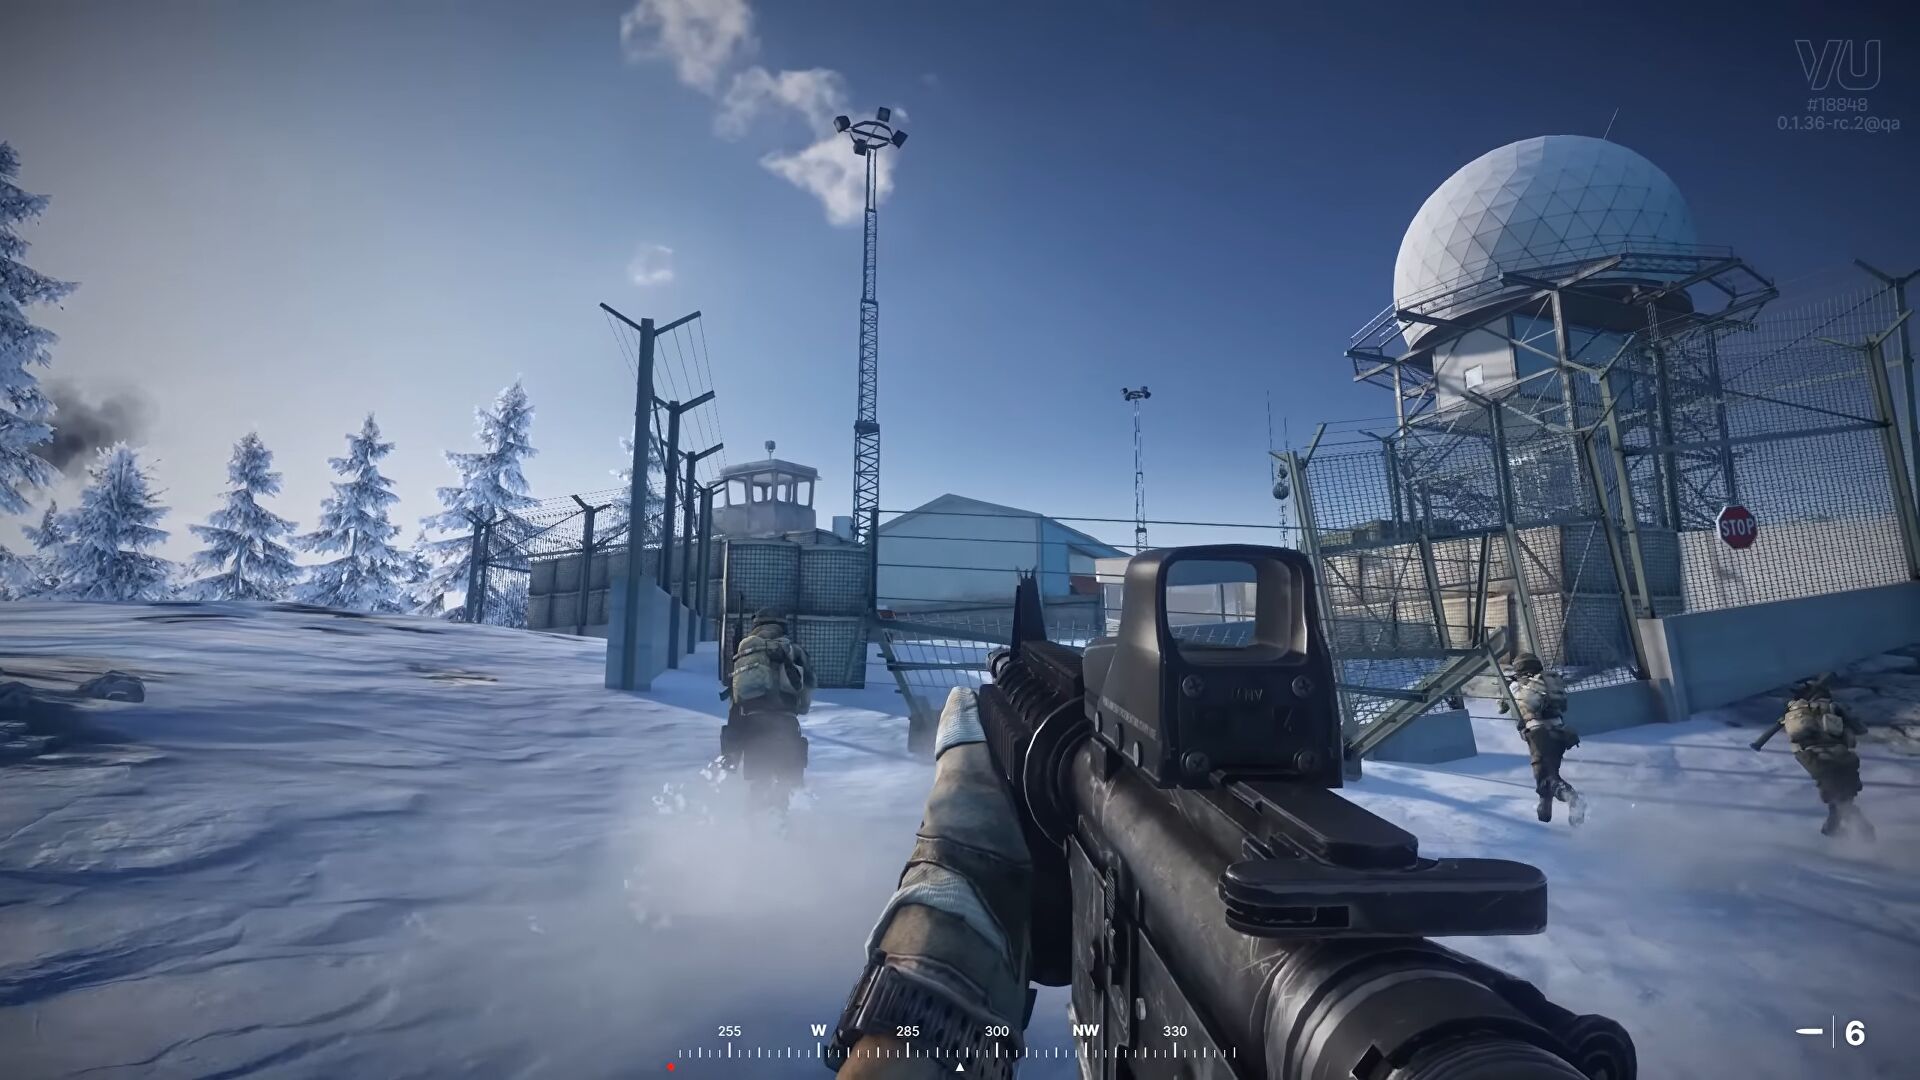 Immagine di Battlefield 3 a tutto realismo grazie ad una mod in arrivo questa settimana